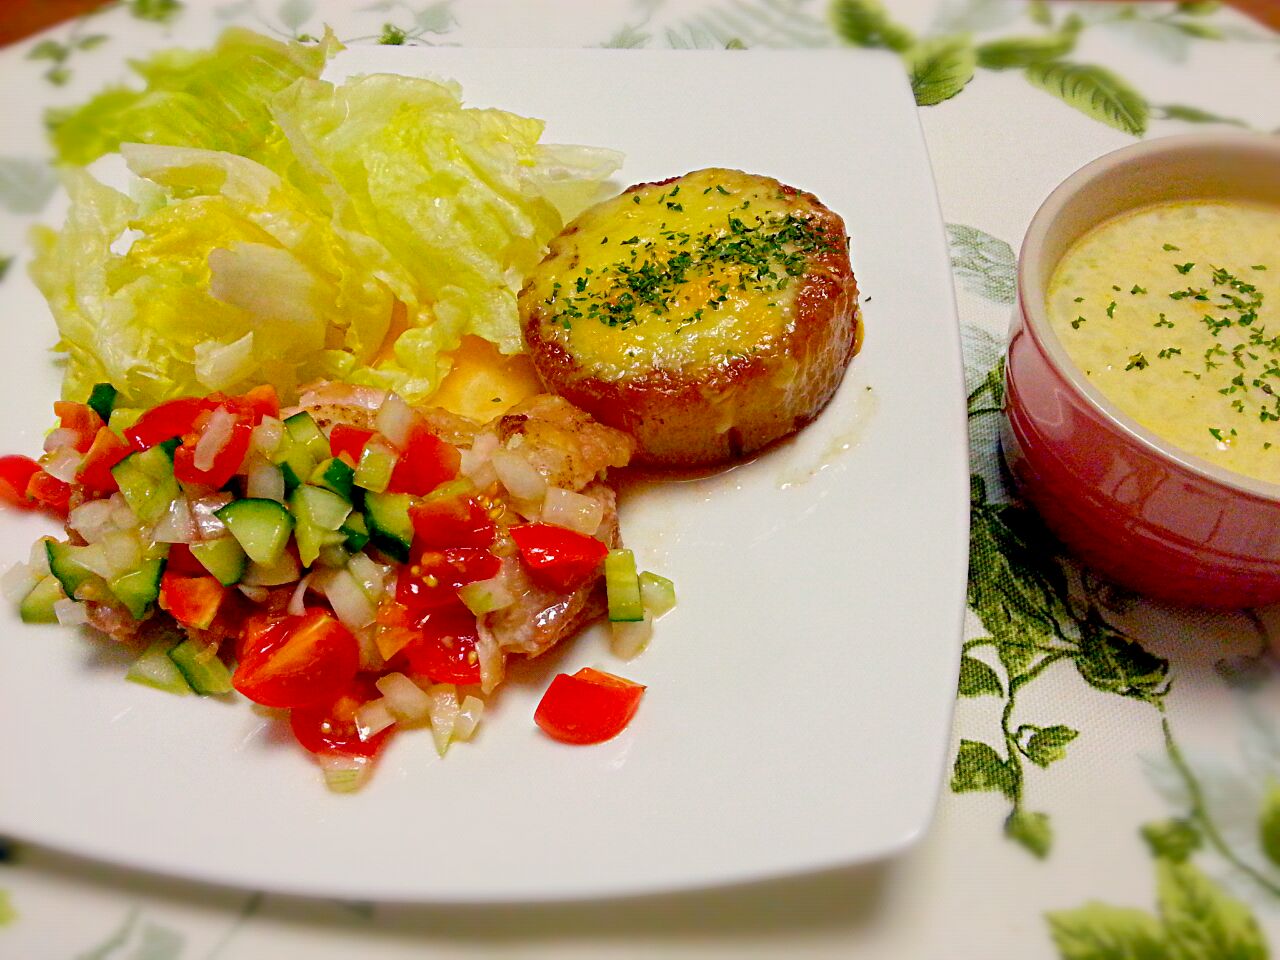 ☆チキンソテー <野菜ソース>
☆大根ステーキ
☆コーンスープ